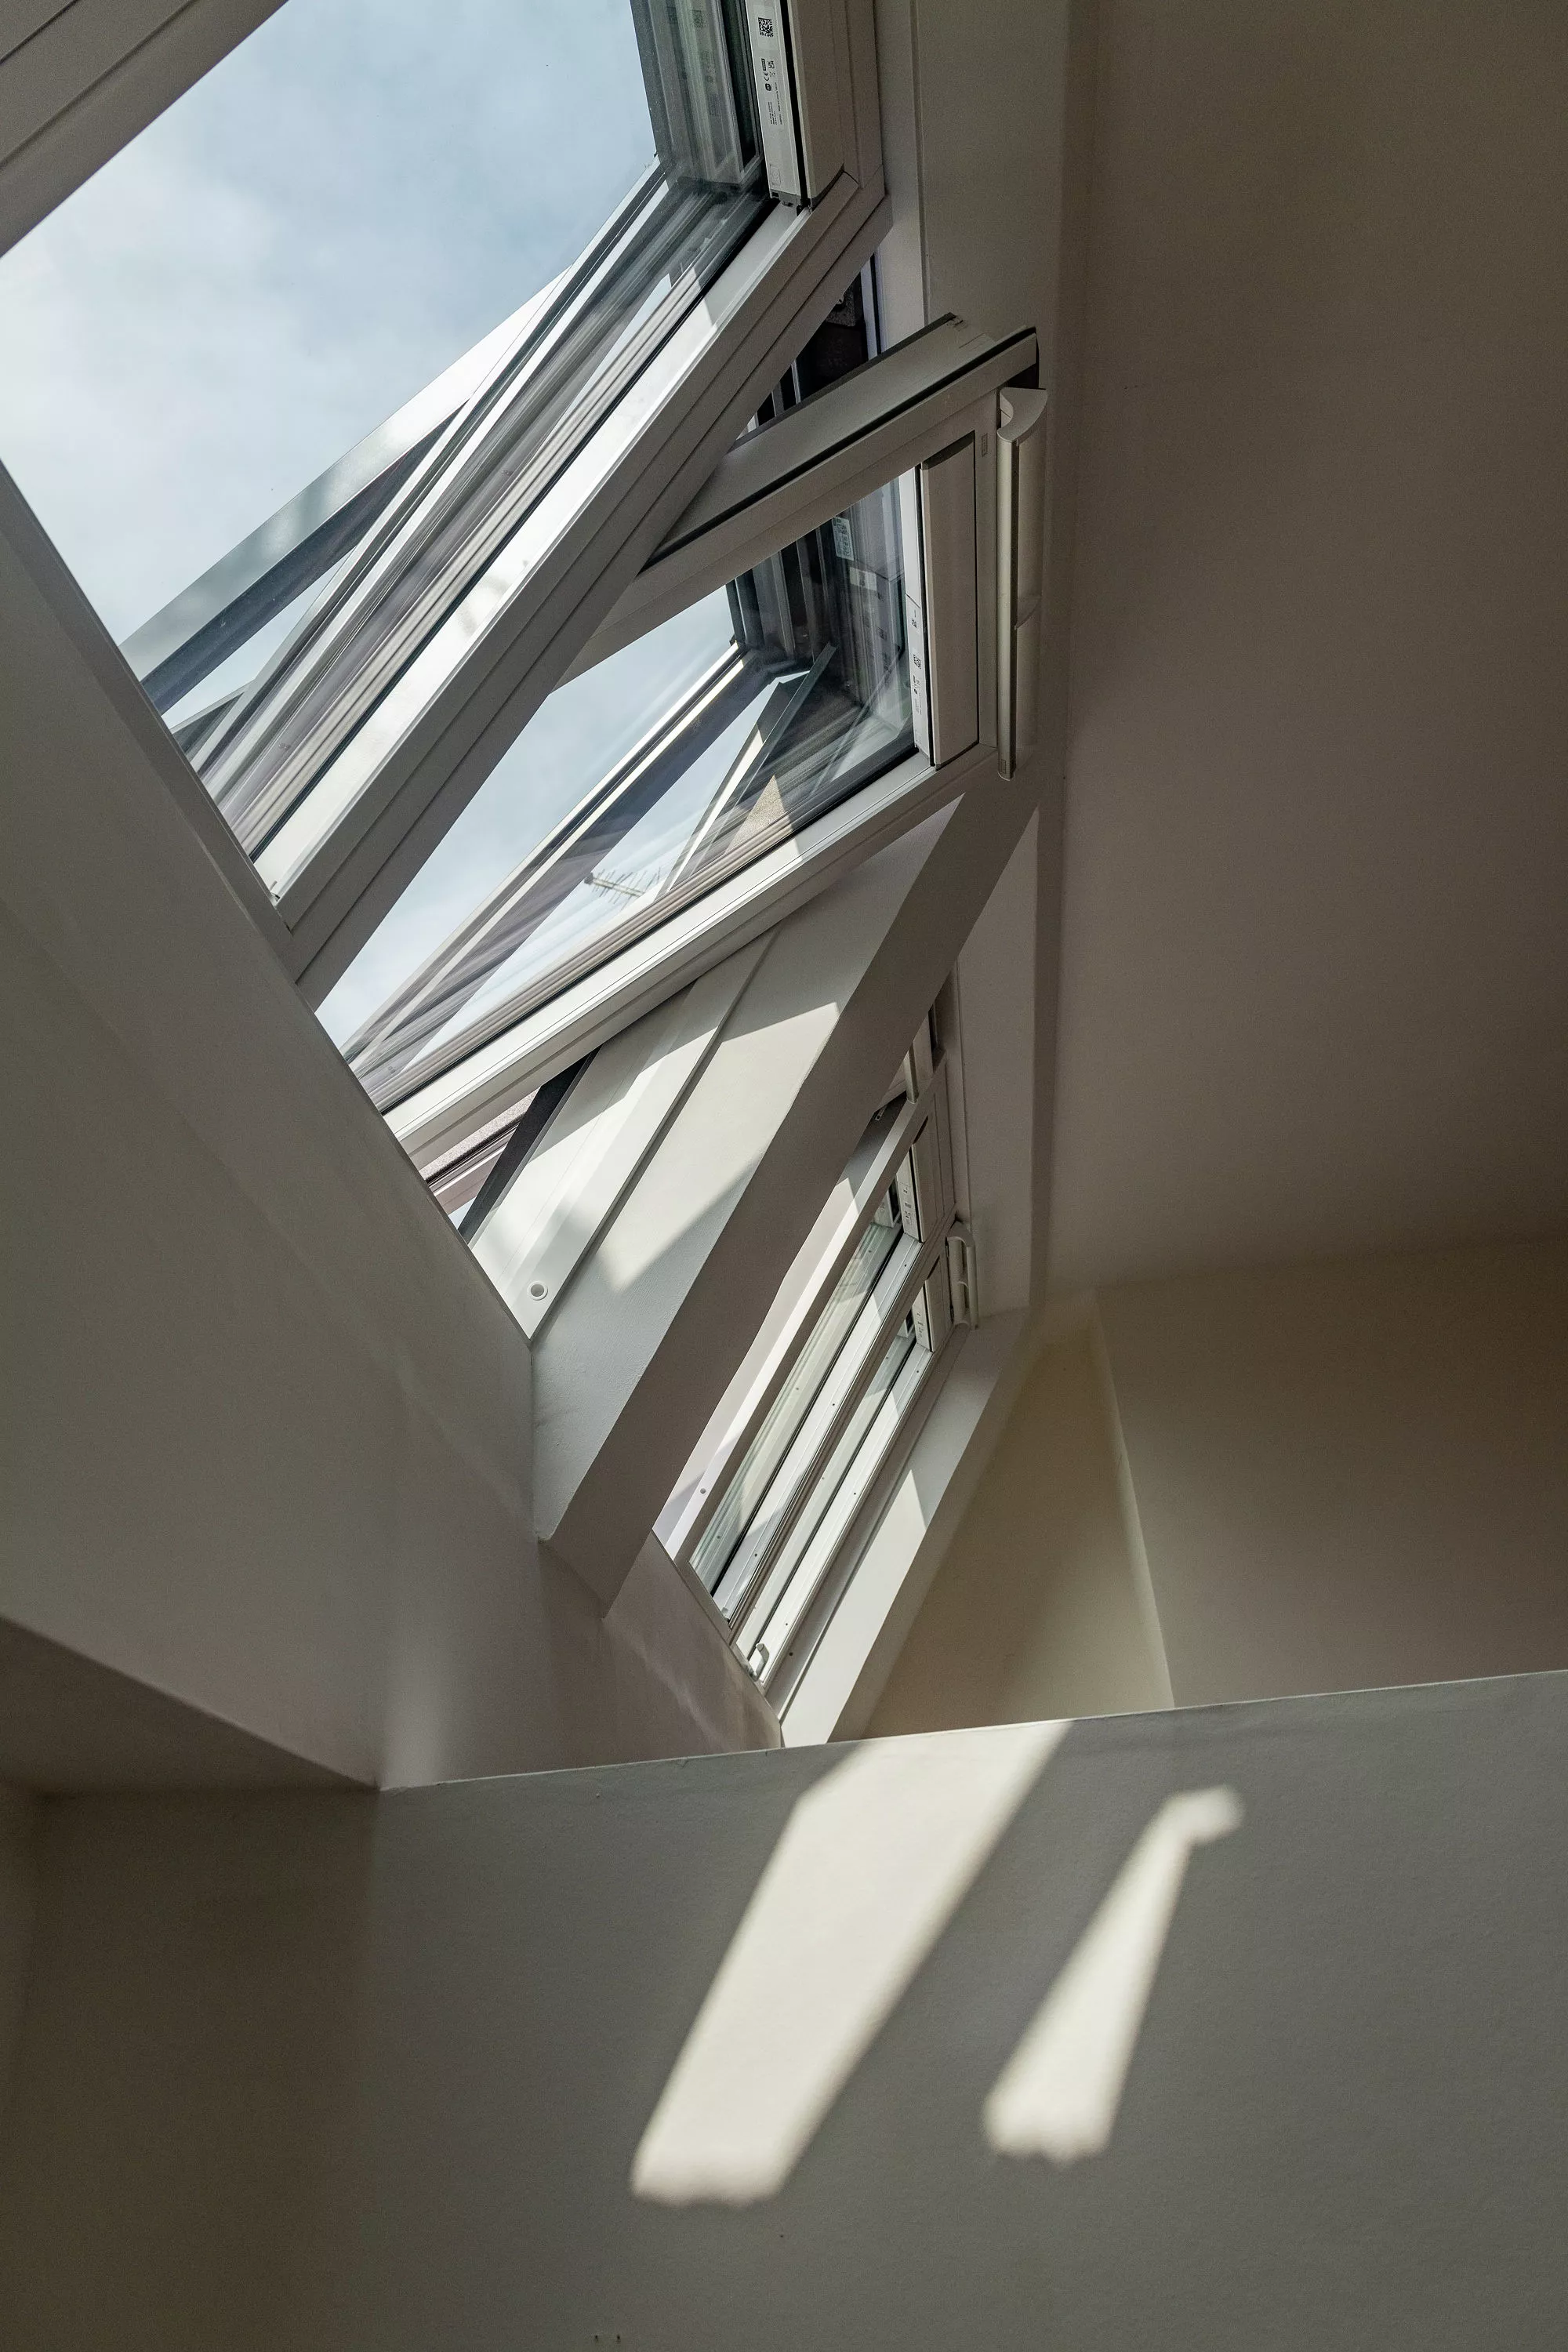 Ouvrez la fenêtre de toit VELUX éclairant un escalier avec la lumière naturelle, créant des ombres dynamiques.